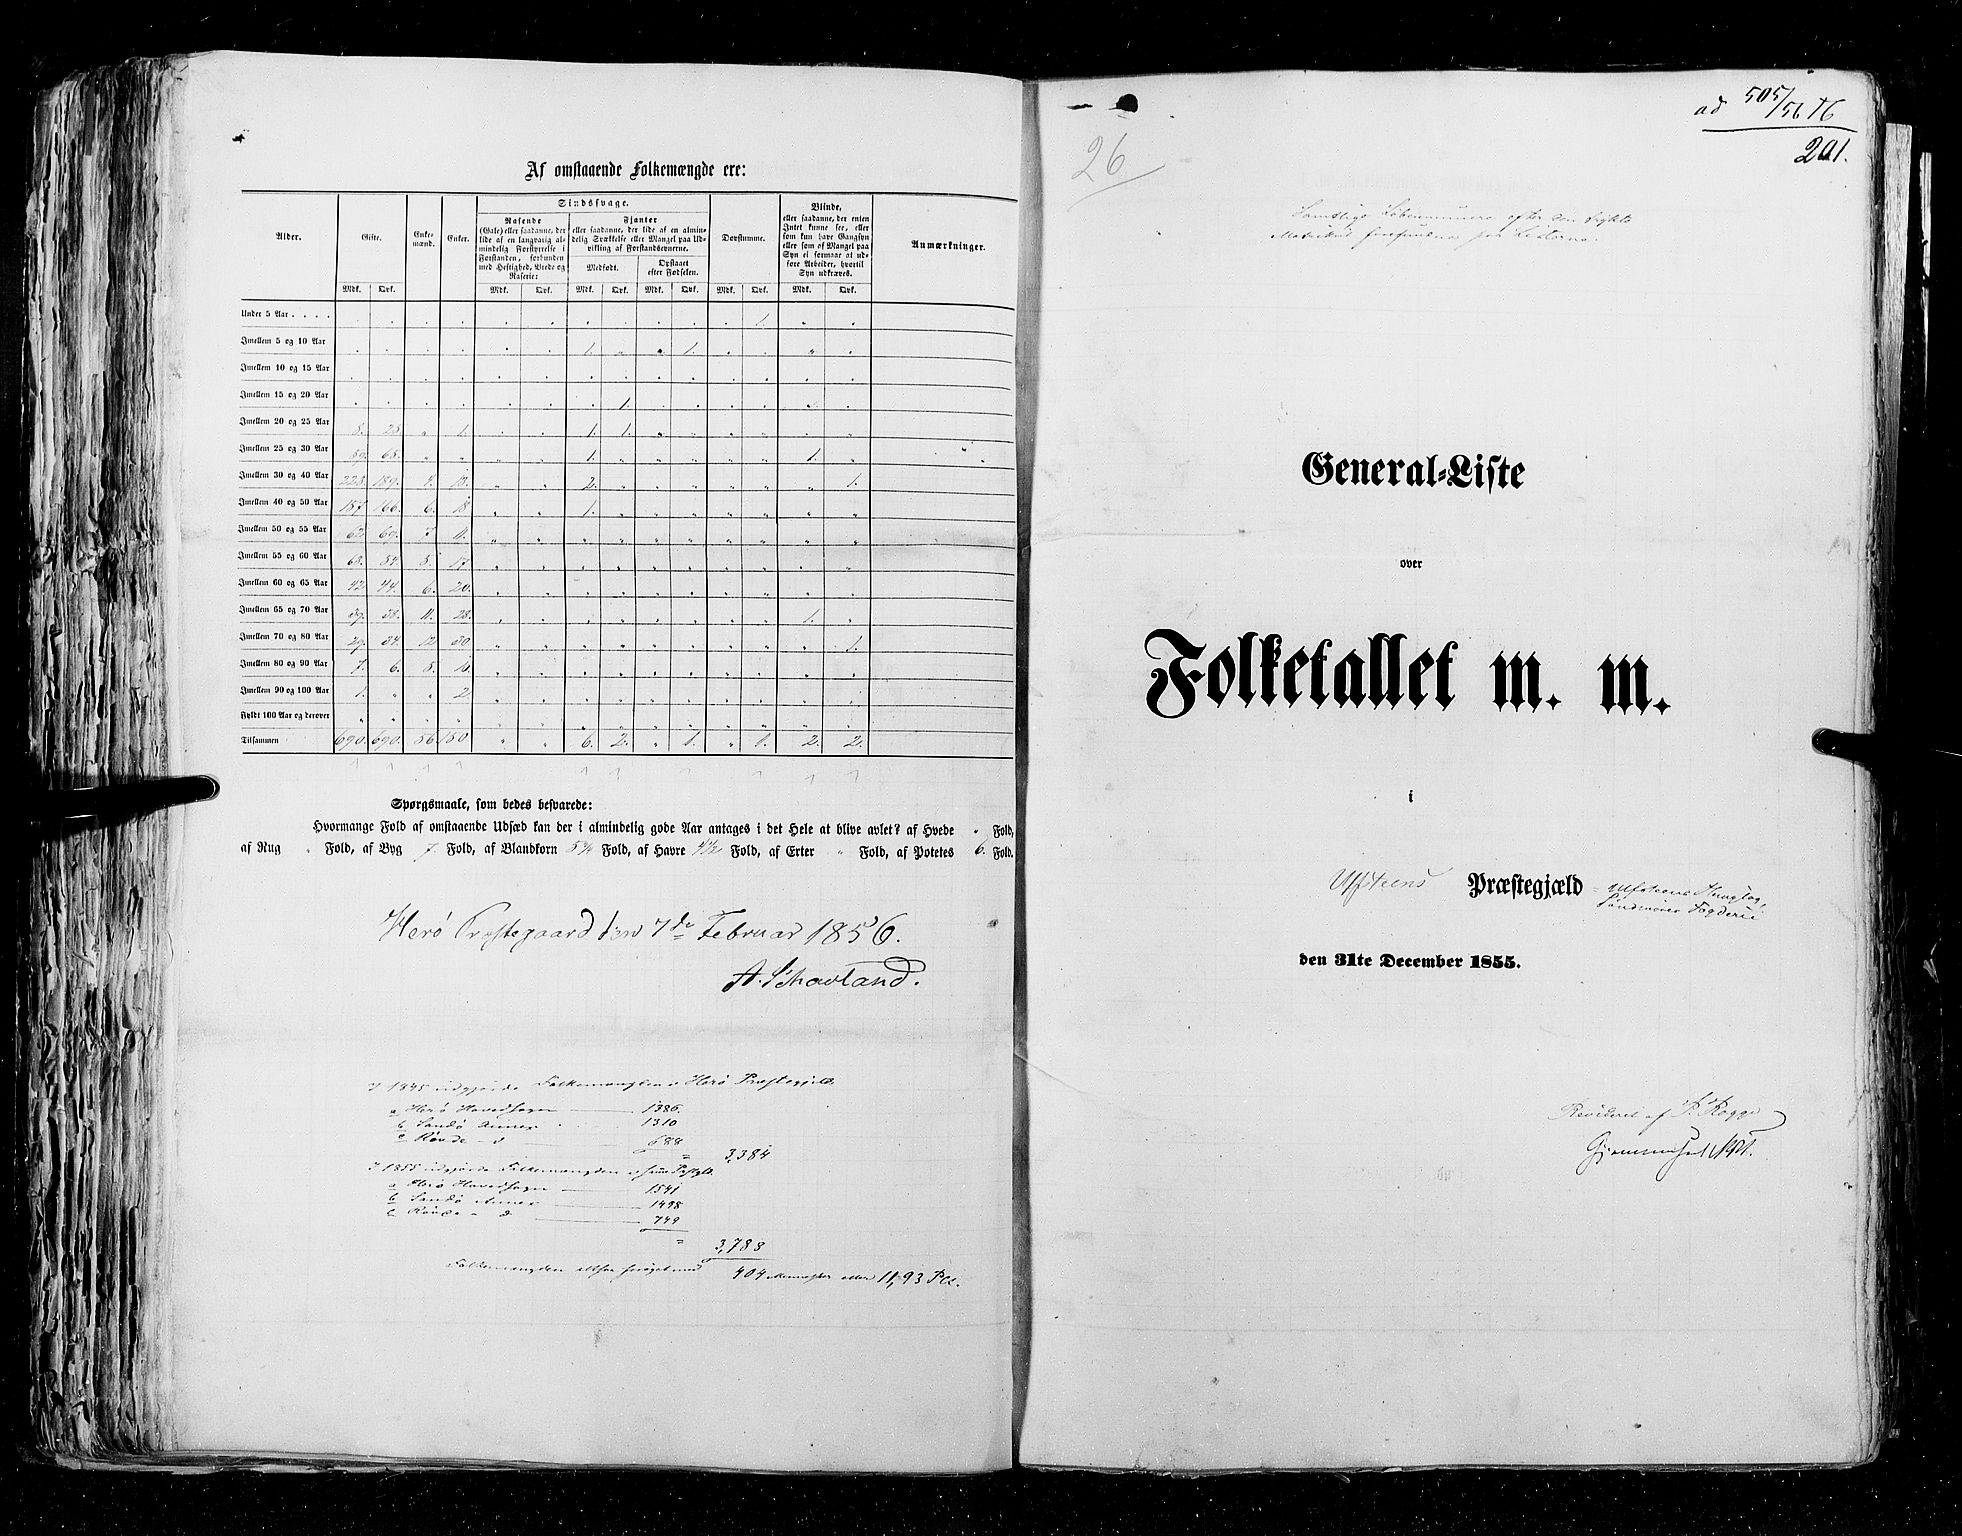 RA, Folketellingen 1855, bind 5: Nordre Bergenhus amt, Romsdal amt og Søndre Trondhjem amt, 1855, s. 201